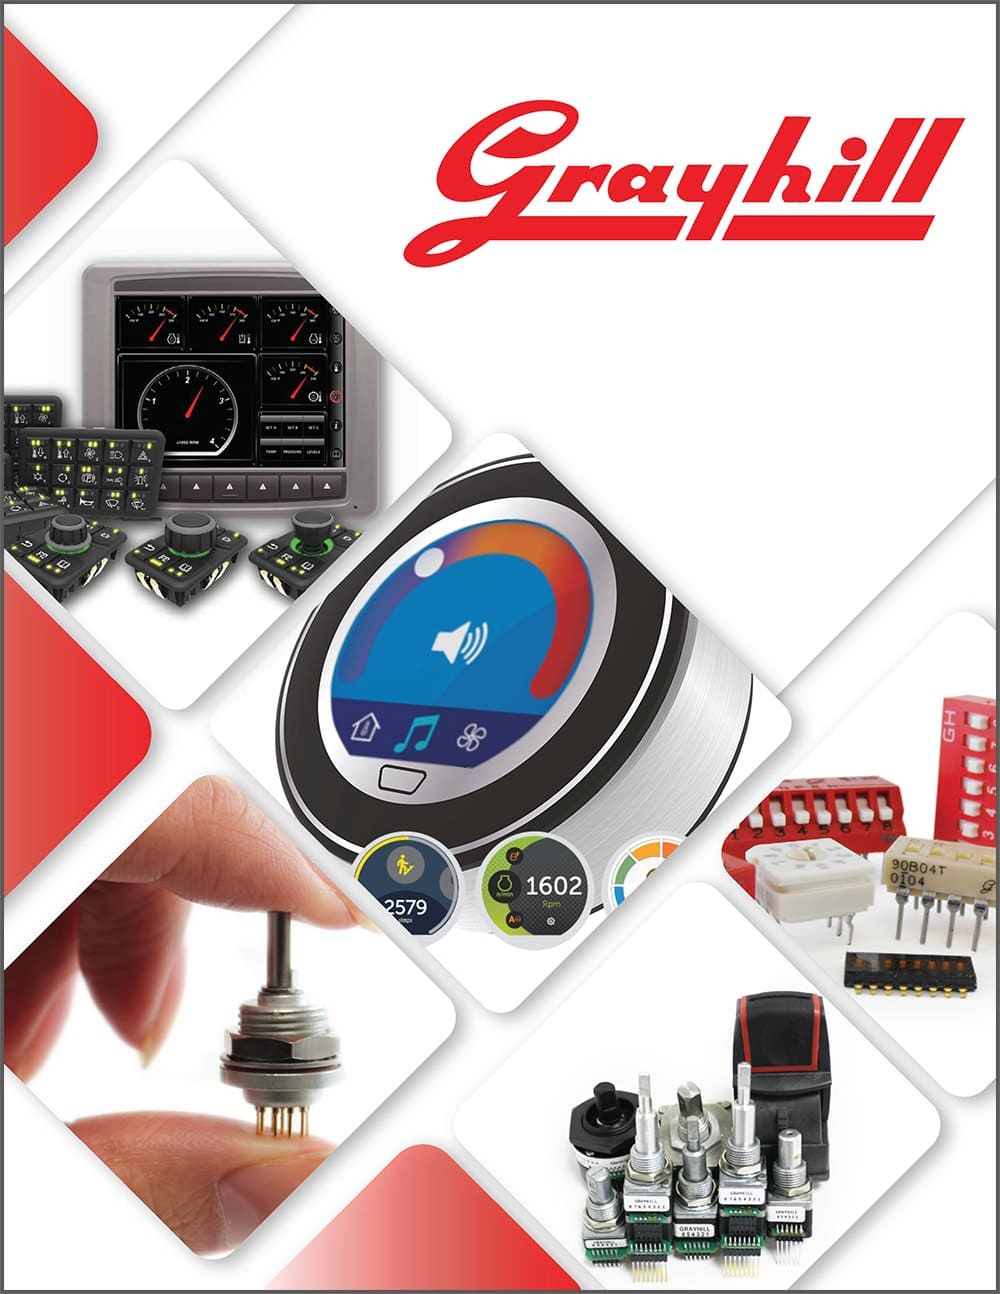 【Grayhill(グレイヒル)社#0】耐環境性能・操作感に優れたスイッチメーカーとは？